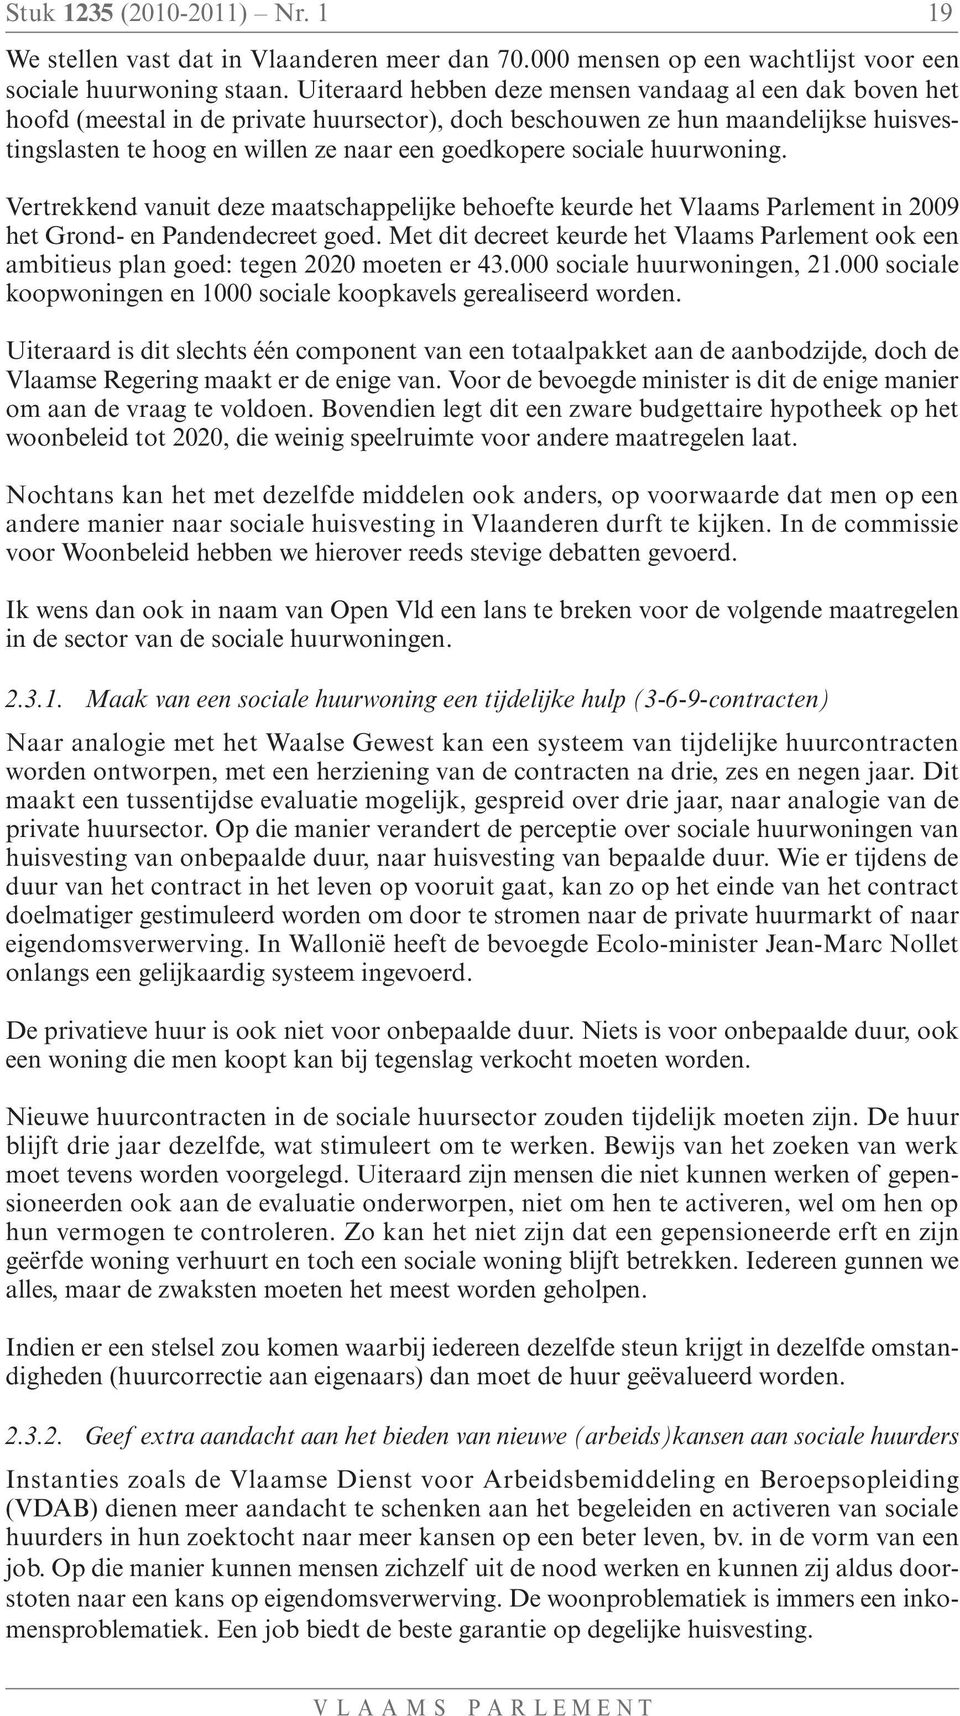 sociale huurwoning. Vertrekkend vanuit deze maatschappelijke behoefte keurde het Vlaams Parlement in 2009 het Grond- en Pandendecreet goed.